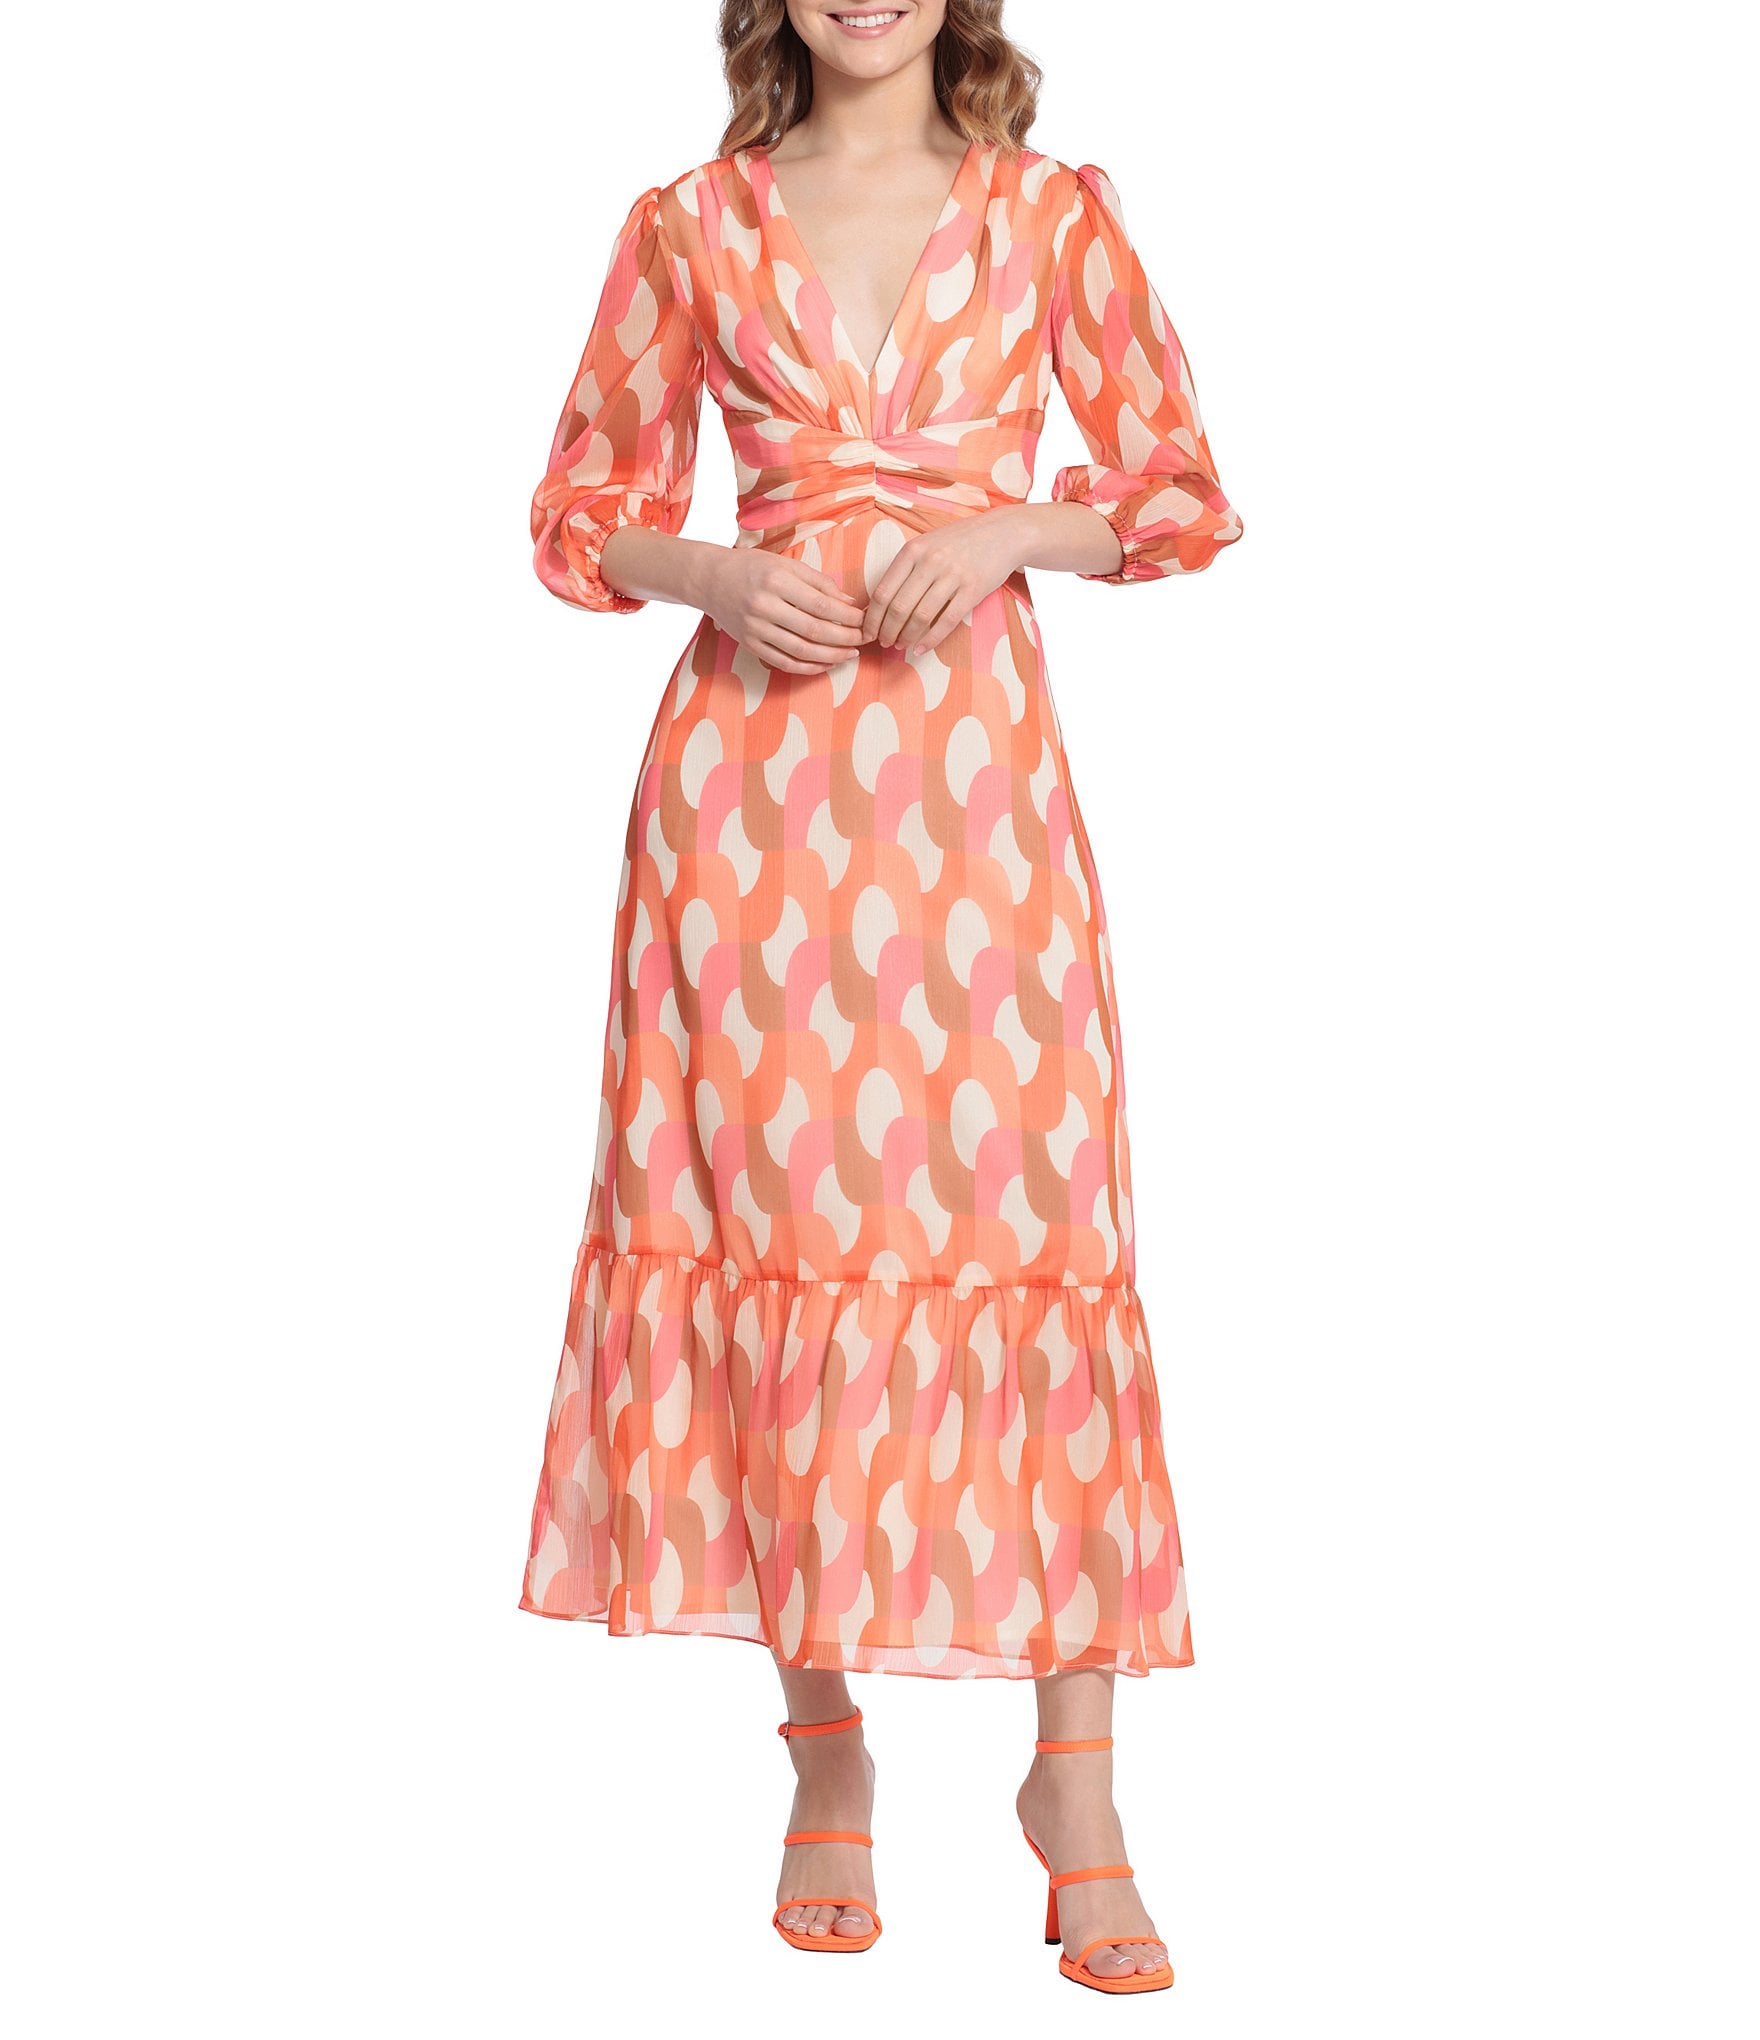 Reba Embroidered Lace Stripe Square Neck Dress